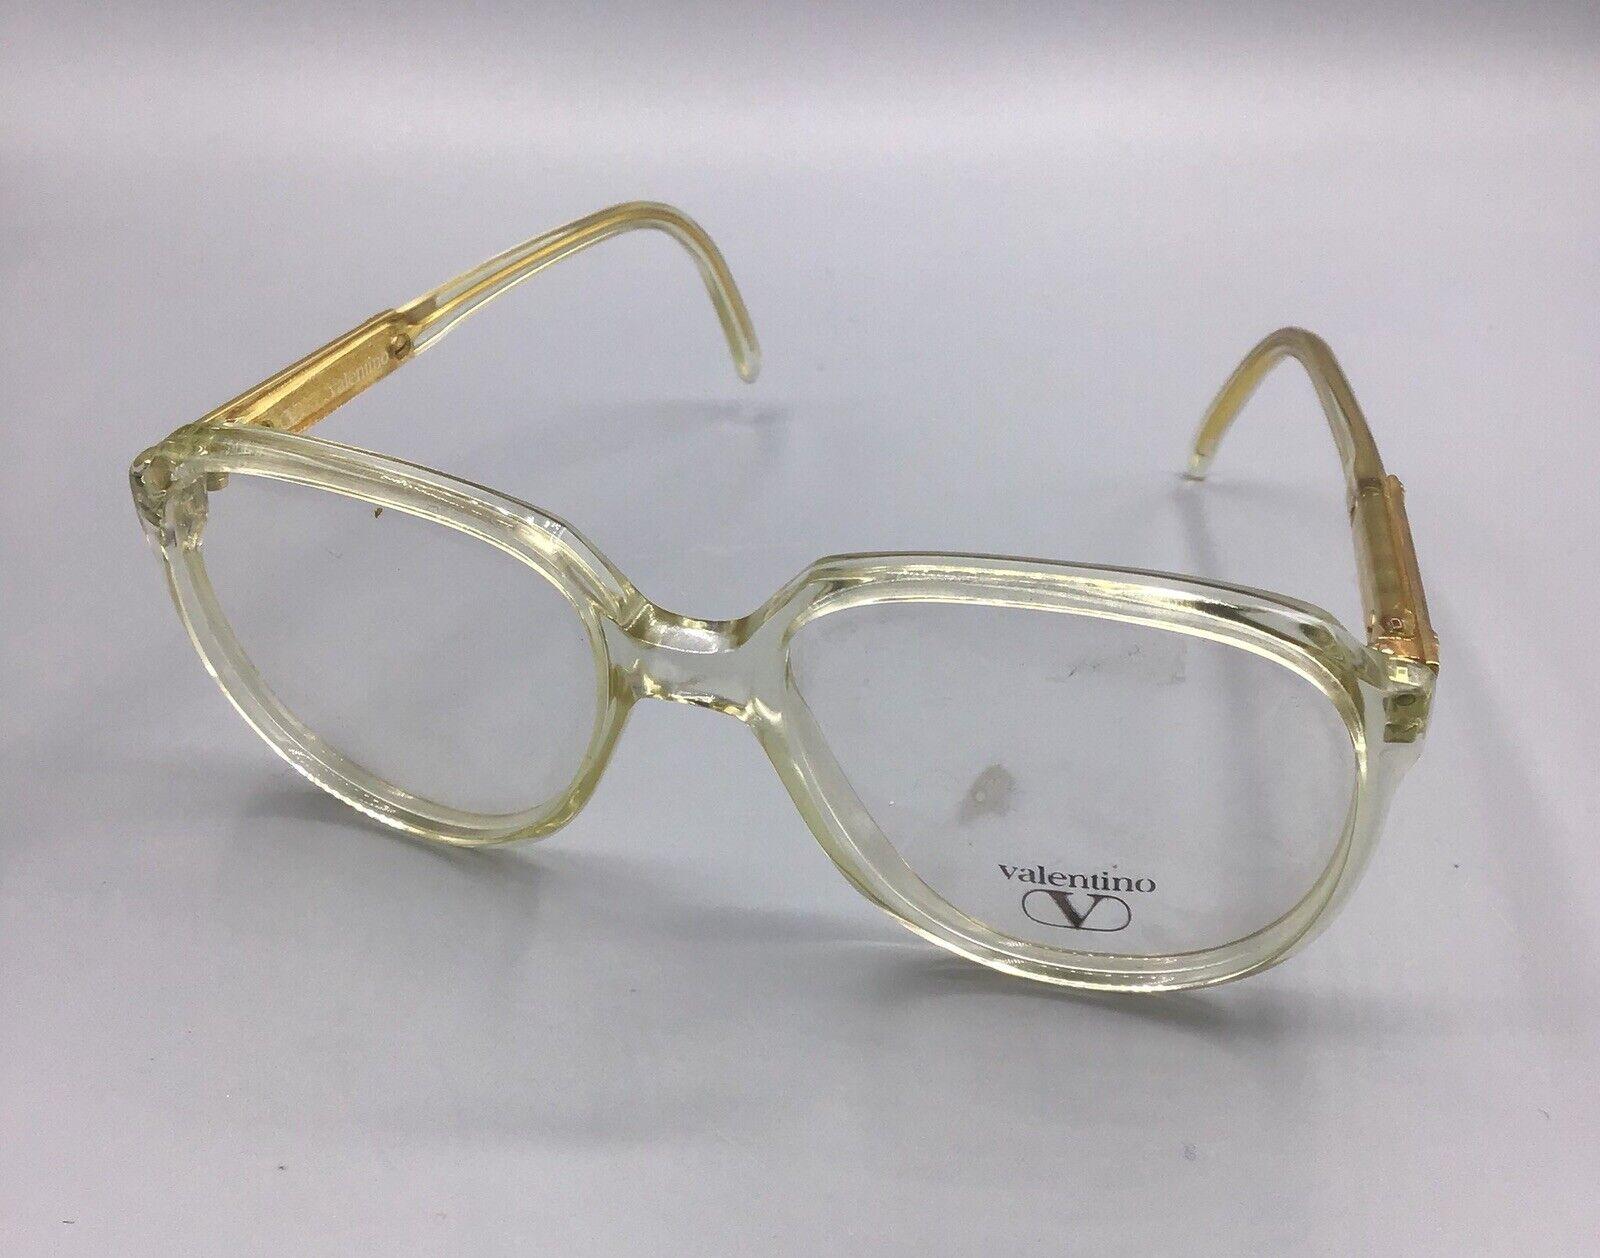 valentino occhiale vintage 043 00 made Italy eyewear brillen lunettes